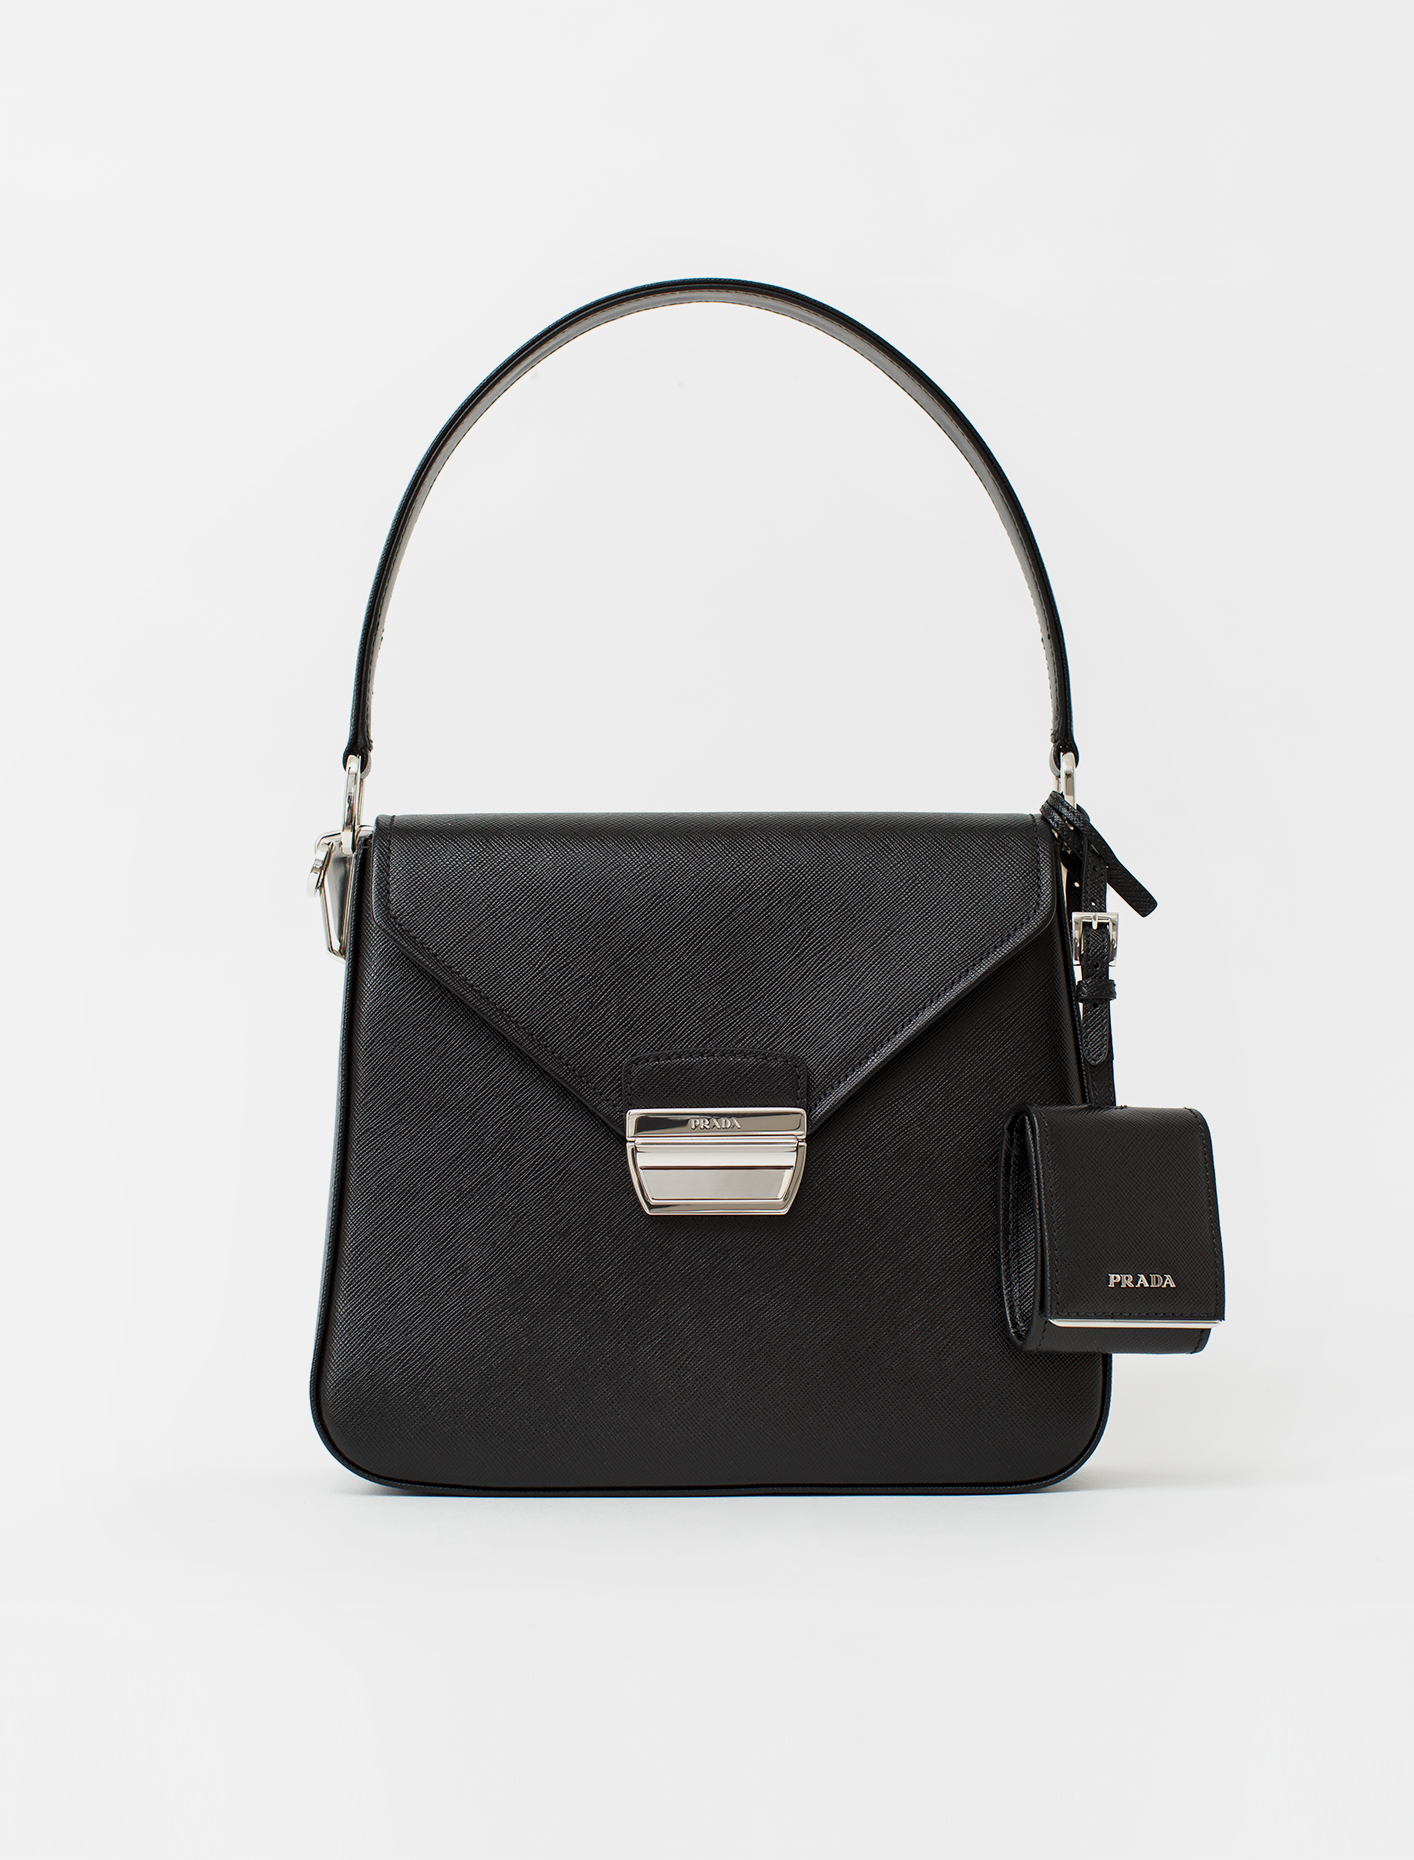 Prada Saffiano Luxe Leather Handbag in Black | Voo Store Berlin ...